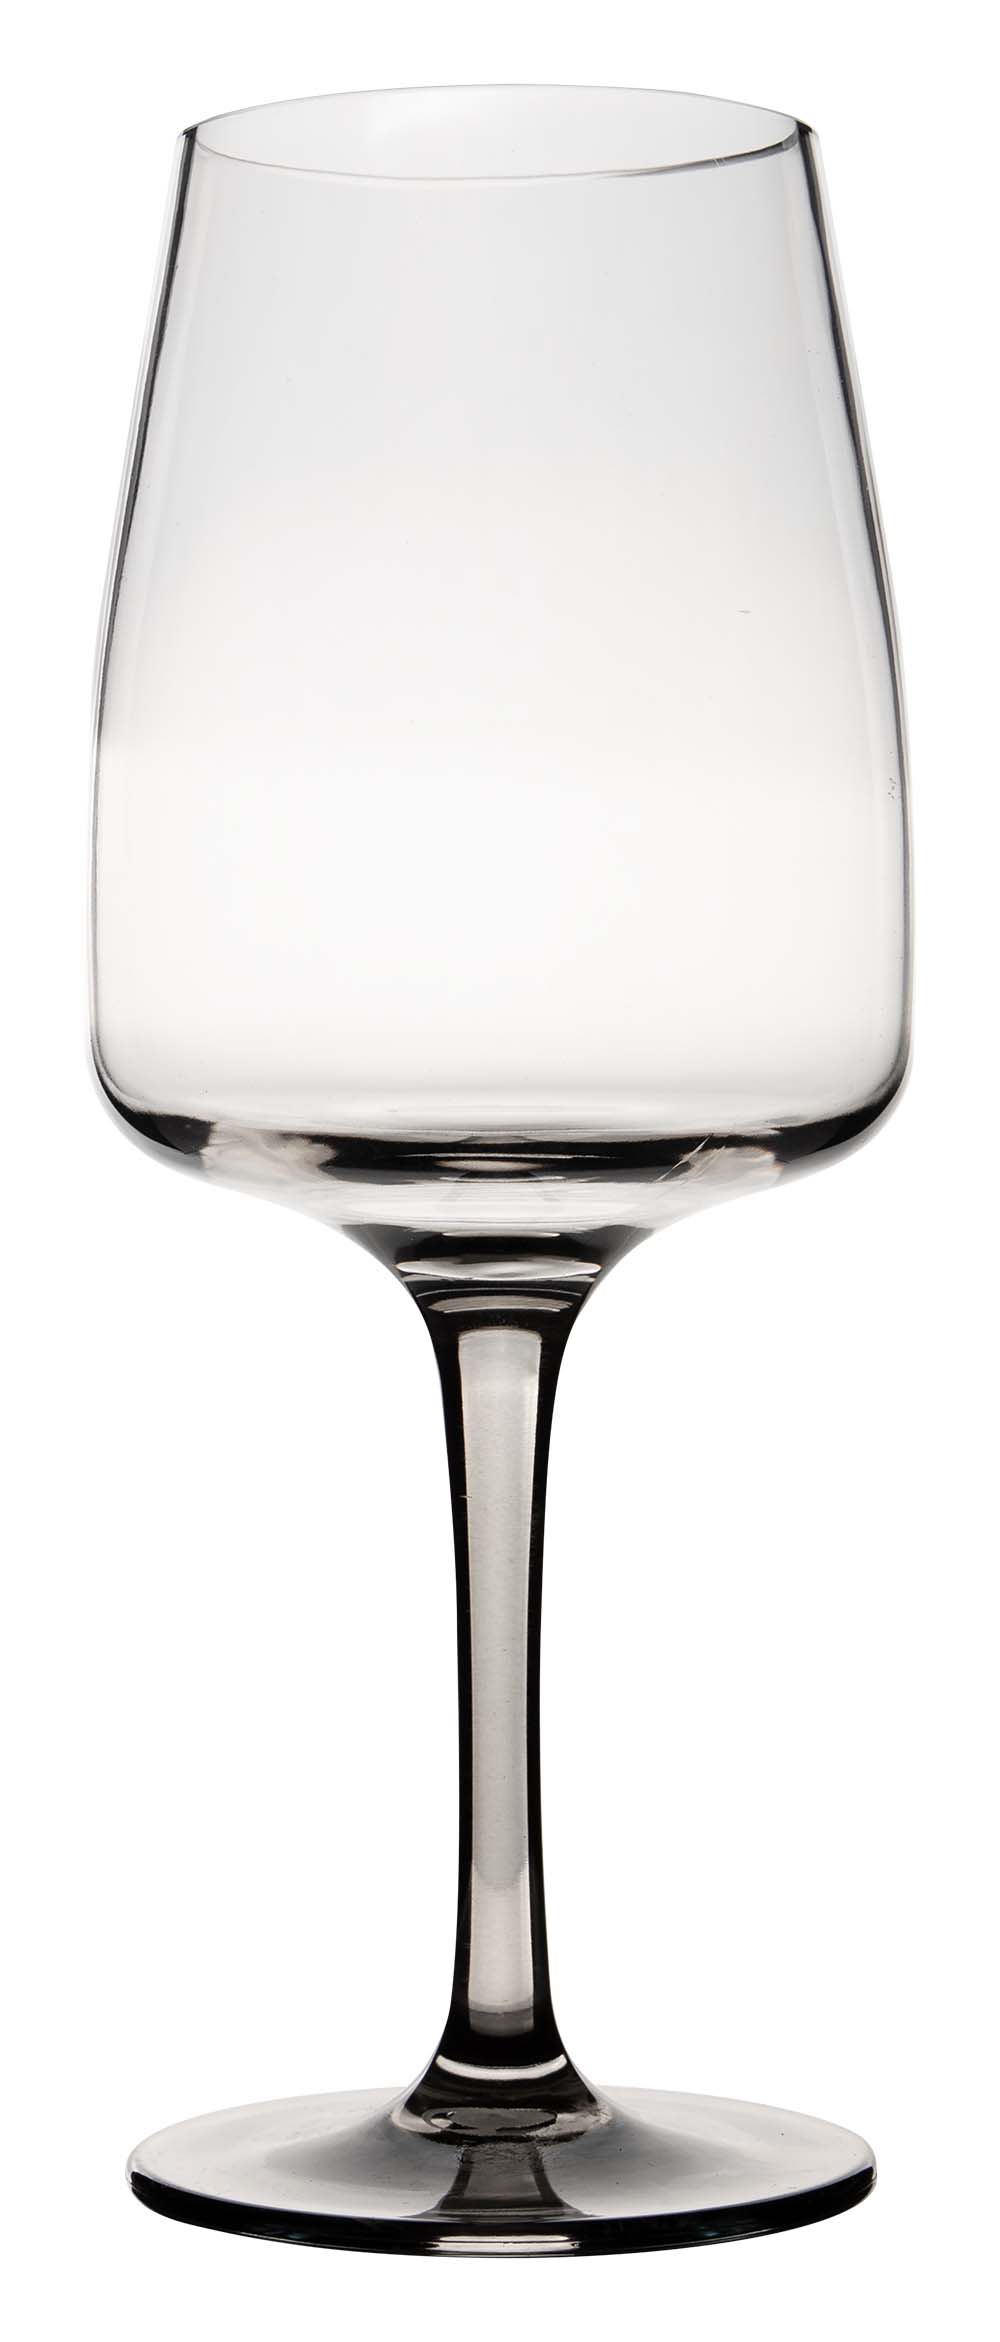 6912181 Ein stilvolles Weinglas aus der Vivid Line Kollektion. Durch den Raucheffekt hat das Weinglas ein modernes Aussehen. Dank des hochwertigen MS-Materials praktisch unzerbrechlich. Enthält ein Set von 2 Stück. Sehr einfach zu reinigen und langlebig, was das Glas sehr nachhaltig macht. Darüber hinaus ist das Weinglas sehr leicht, kratzfest und BPA frei. Fassungsvermögen: 470 ml.